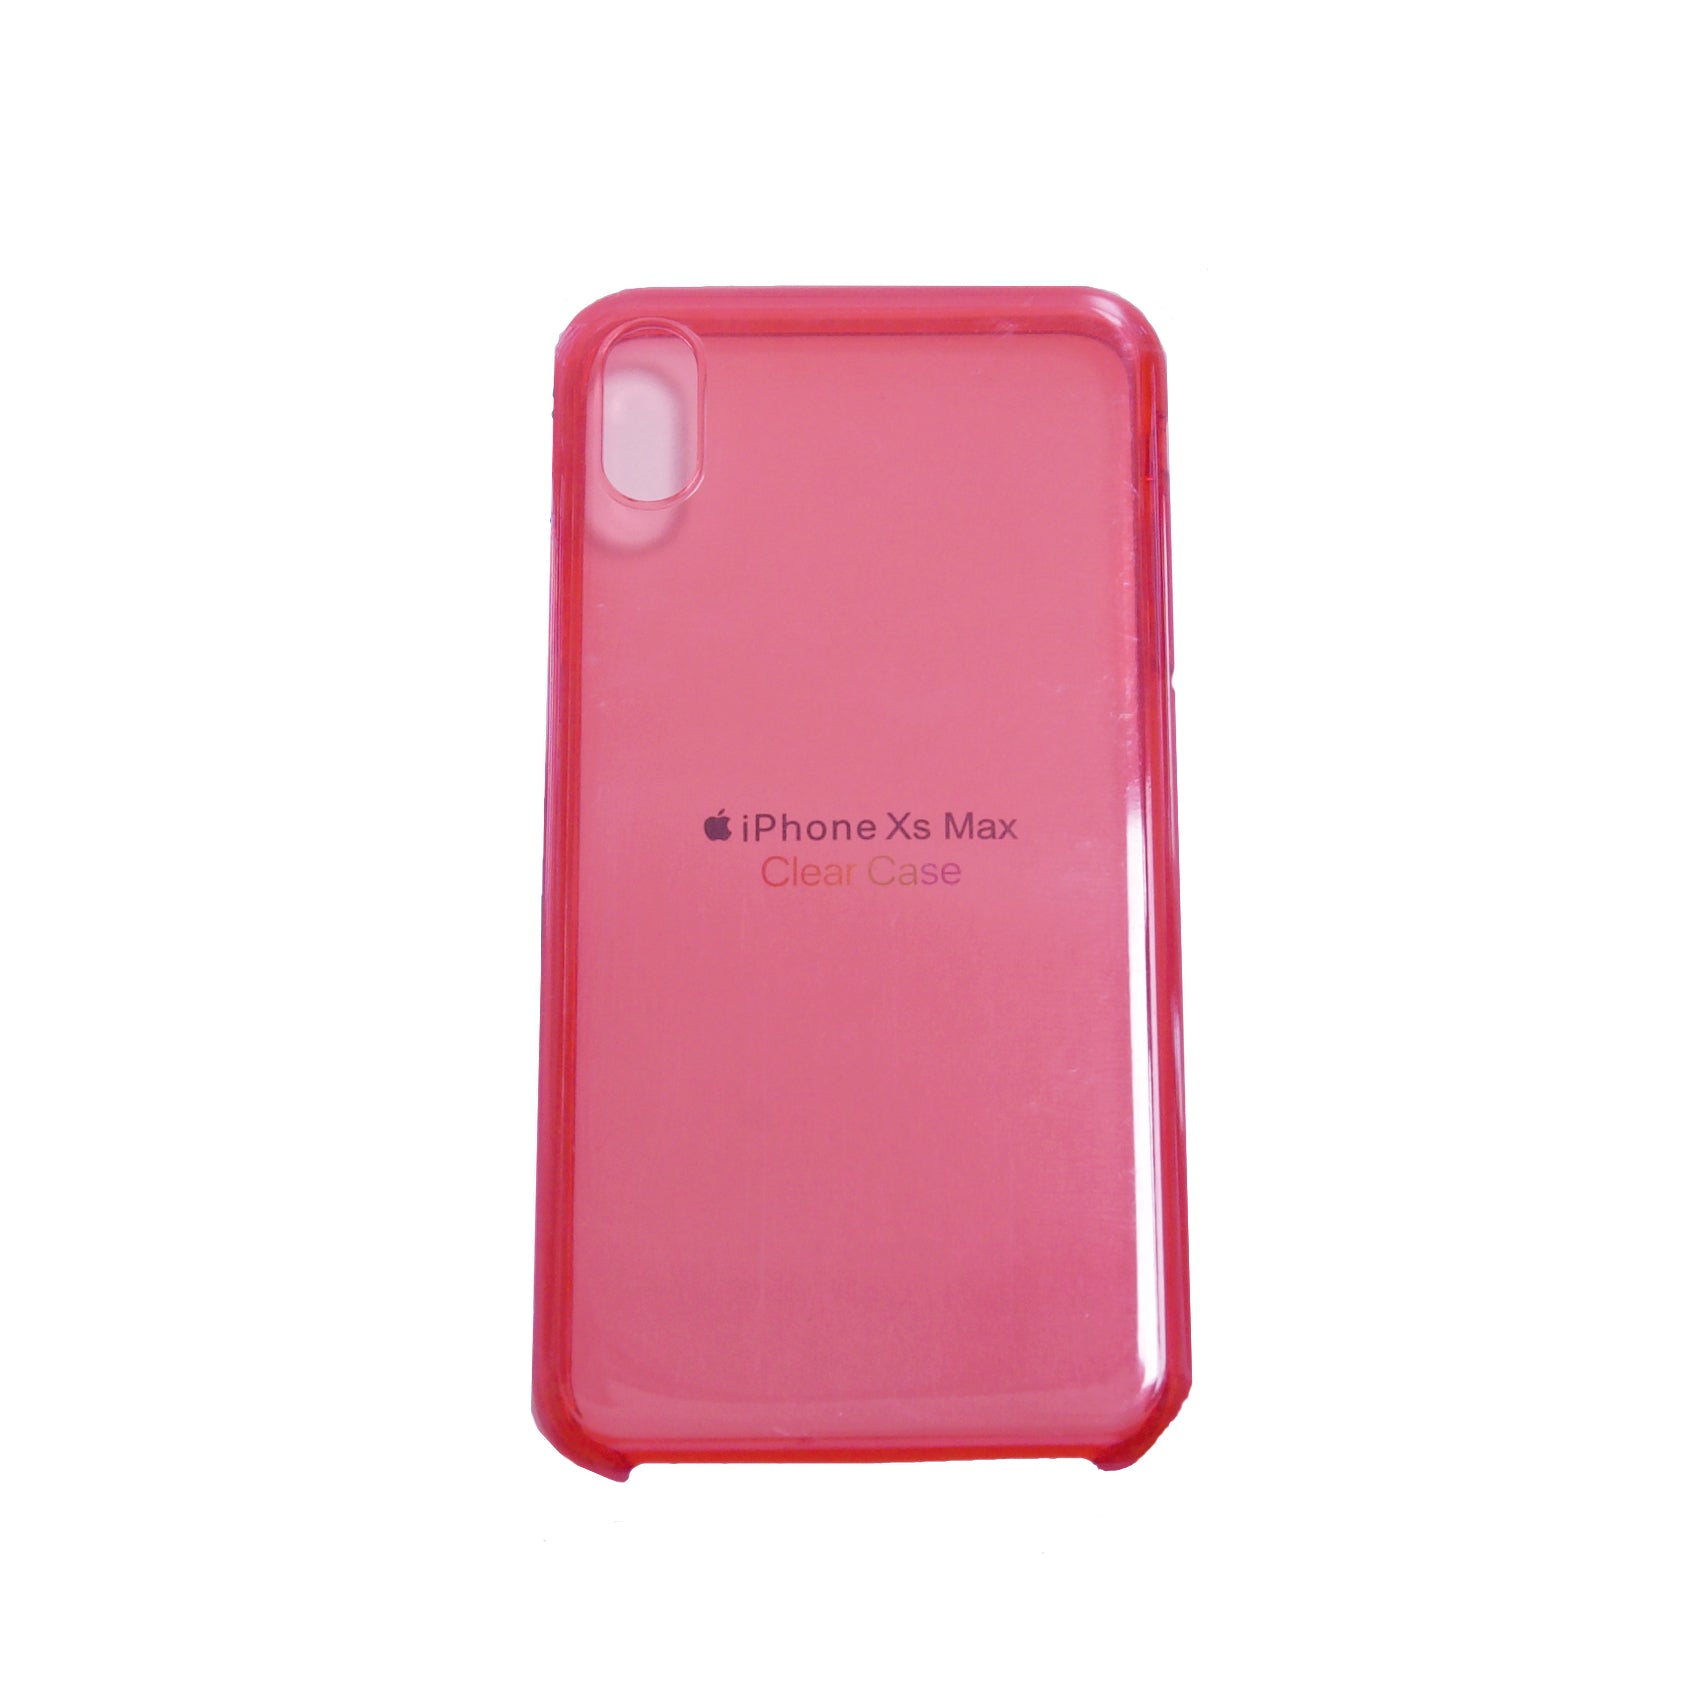 Estuche apple iphone xs max (6.5) color transparente / fucsia